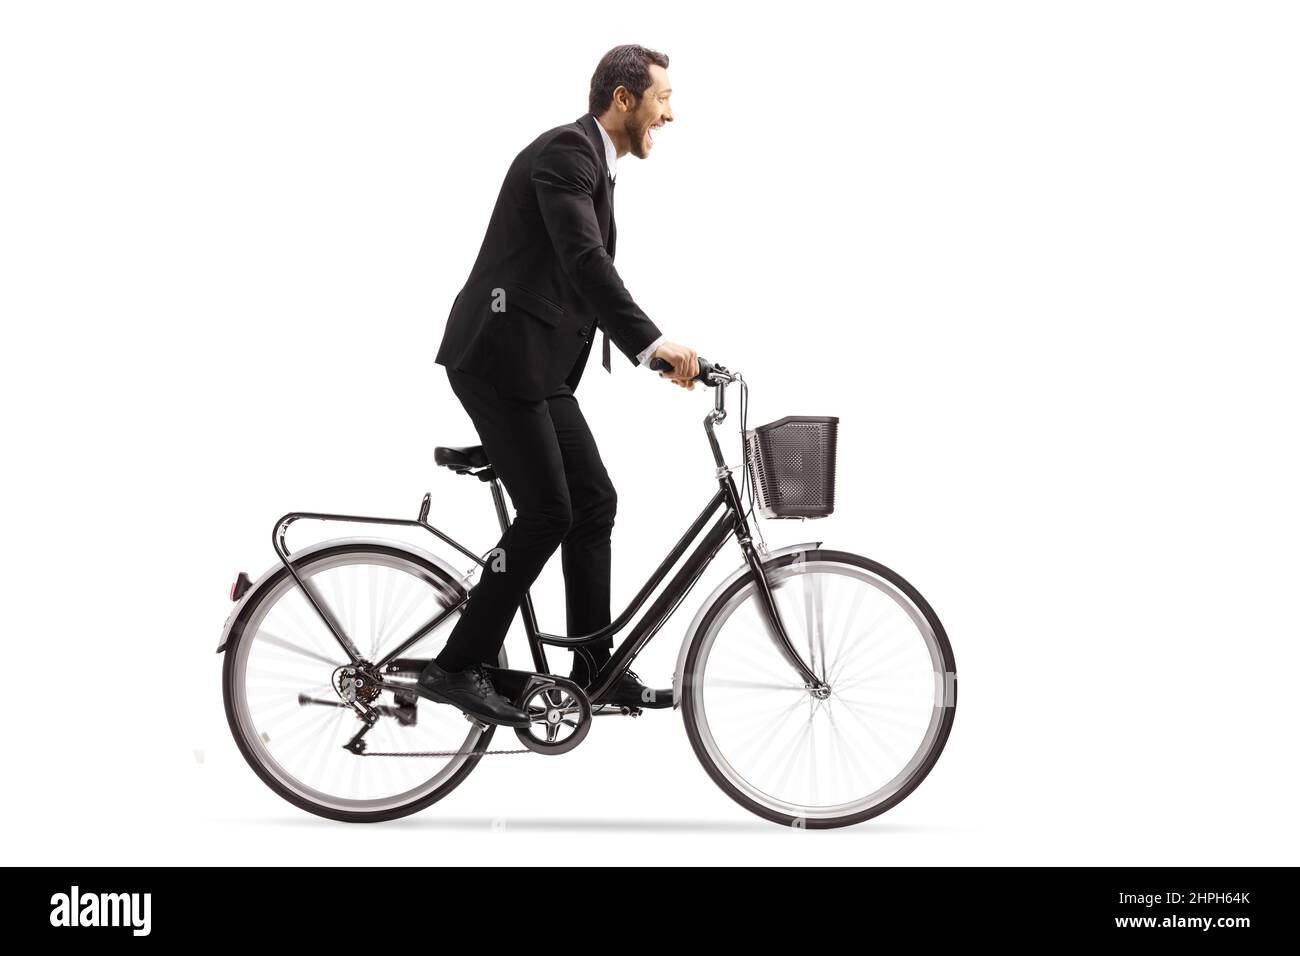 Profilo girato di un uomo d'affari che guida una bicicletta fuori dalla sella isolato su sfondo bianco Foto Stock